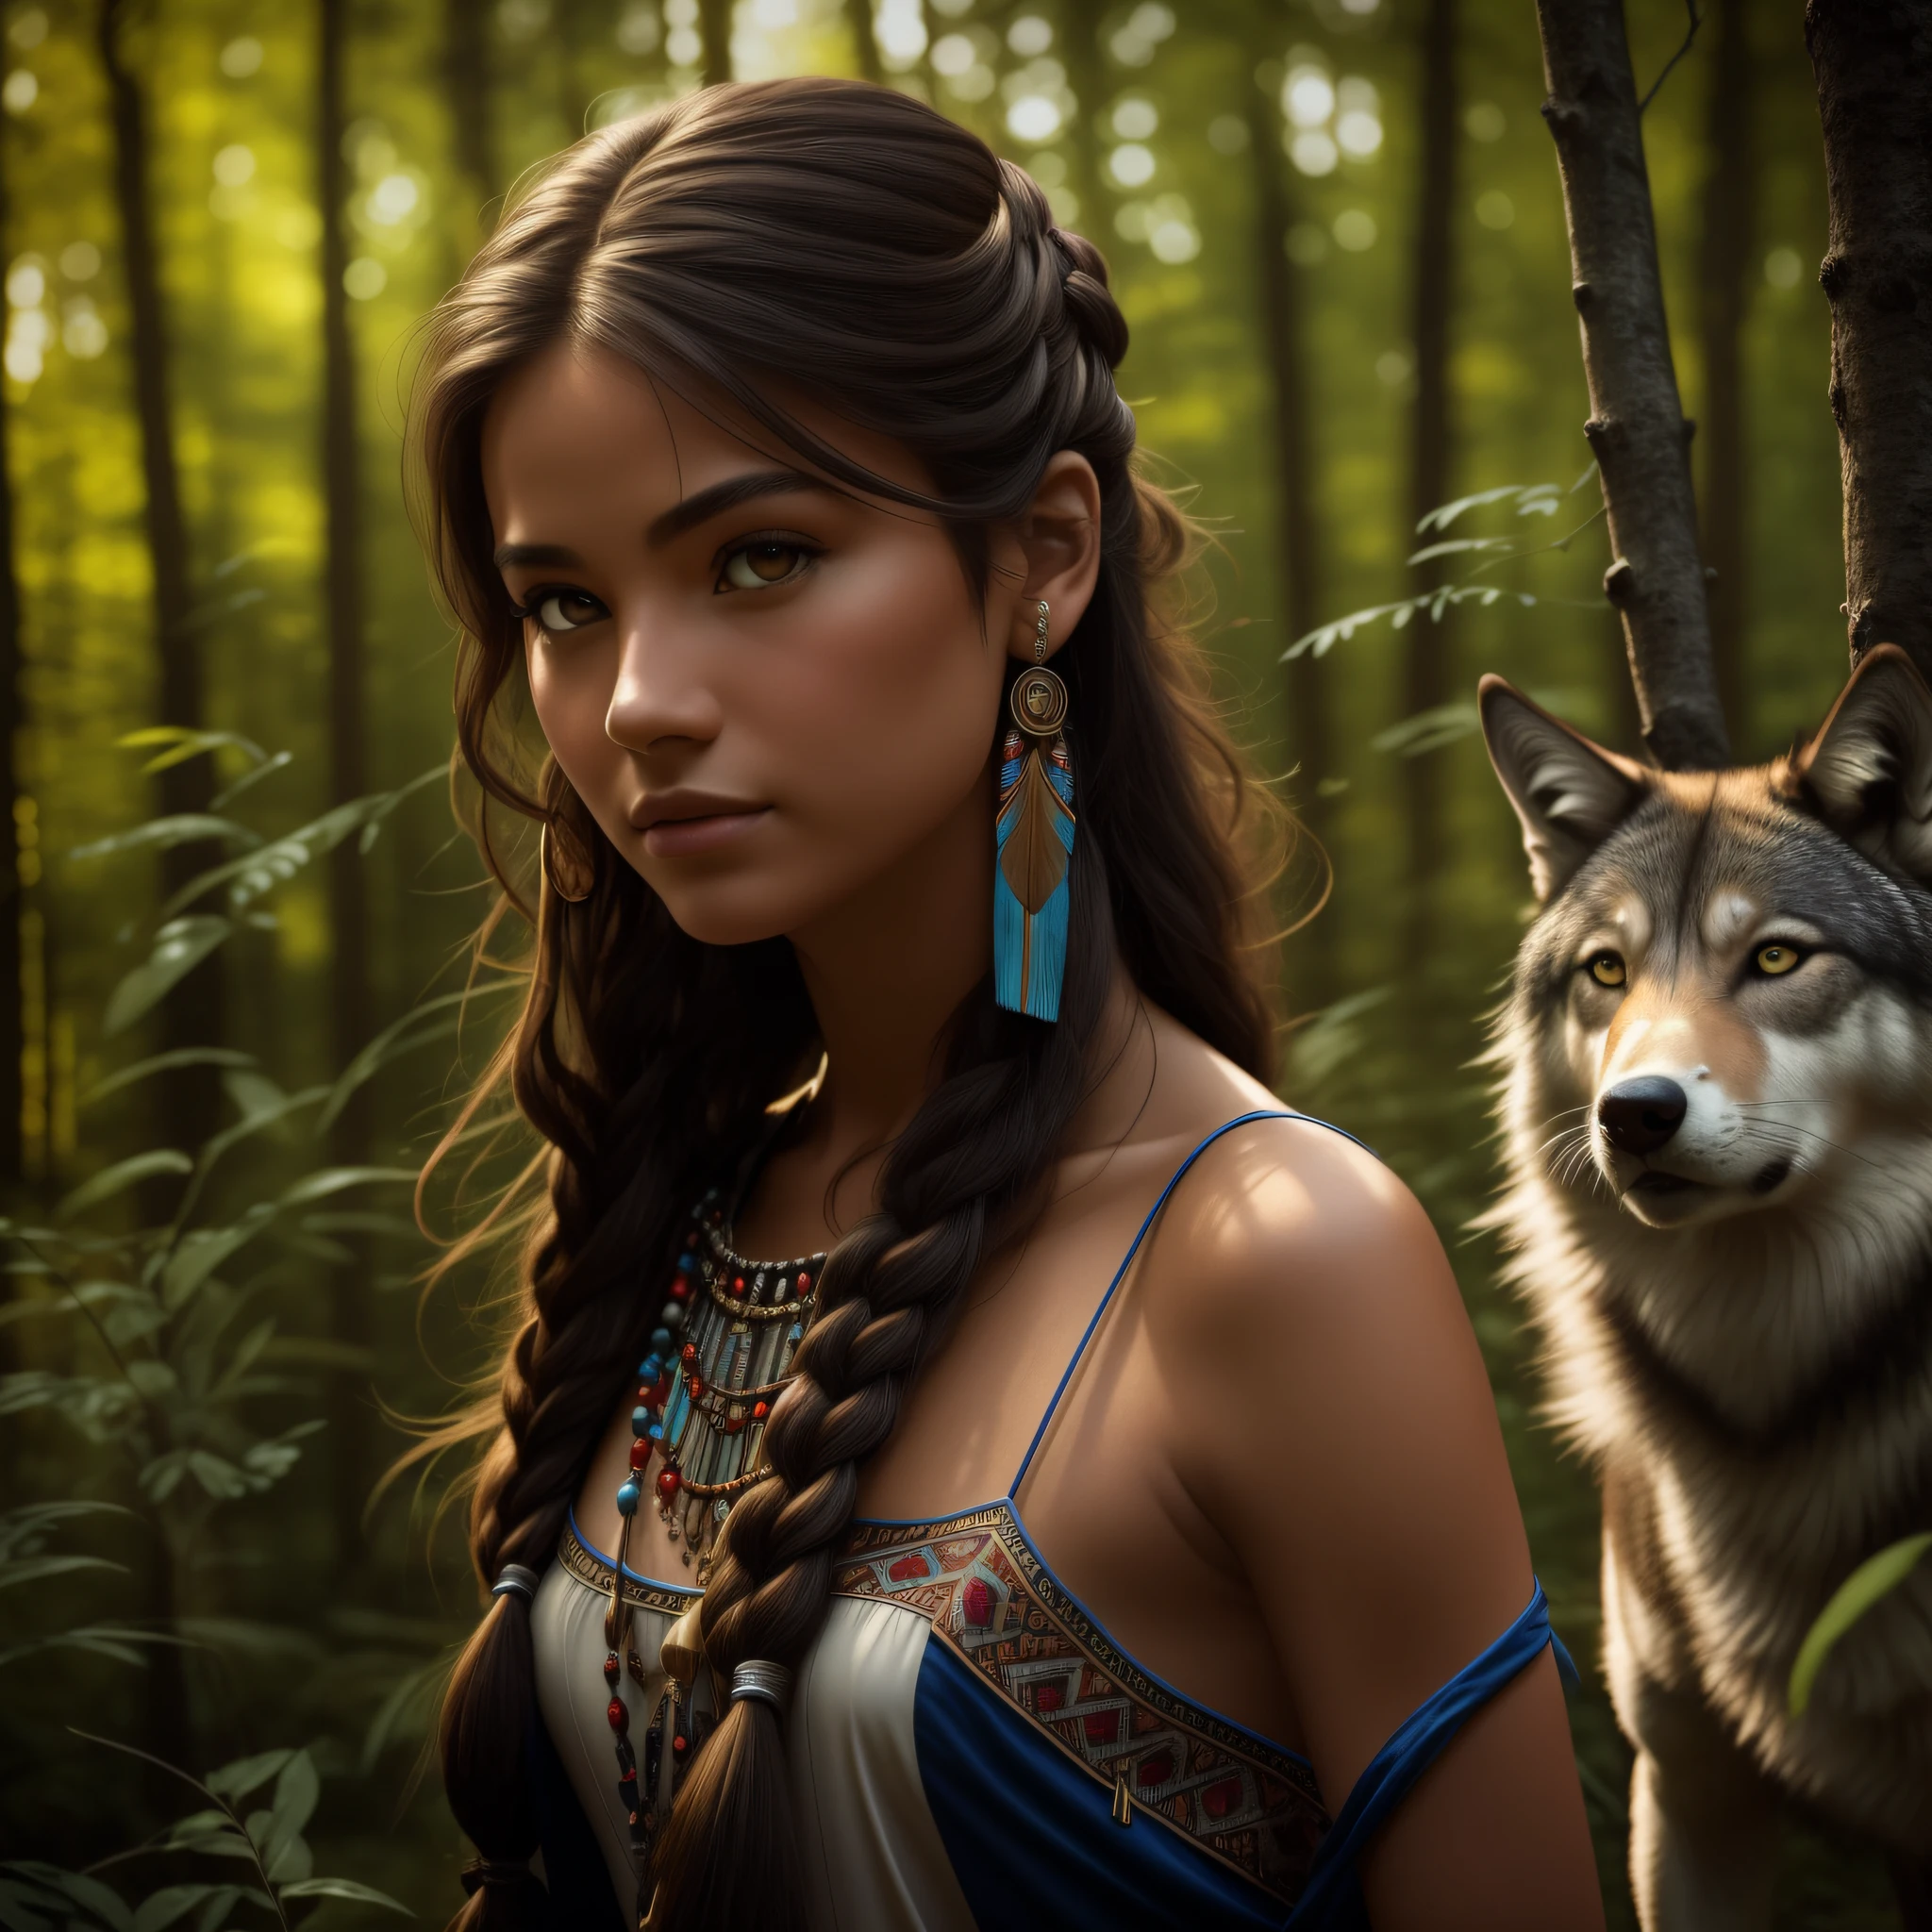 (meilleure qualité, chef-d&#39;œuvre: 1.1), (le réalisme: 1.4),(chef-d&#39;œuvre, réaliste: 1.4), (extrême précision: 1.2); (Devant: 1.3), réaliste portrait of a Native American girl with indigenous adornments with her ultra réaliste pet wolf in the forest, Robe tribale, cheveux très longs, épaules nues, ciel de nuit, lueur de galaxie, océan, eau, inclinaison de la tête, vent, des nuages, Lumière naturelle, Extérieur, seulement, CASSER, lumière cinématographique, Ultra haute résolution, 8k euh, Perles de film,  anatomie parfaite, Delicate and délicat skin, Meilleures ombres, délicat, brut, Haute résolution, chasseresse, nuit, luminosité de la pleine lune.